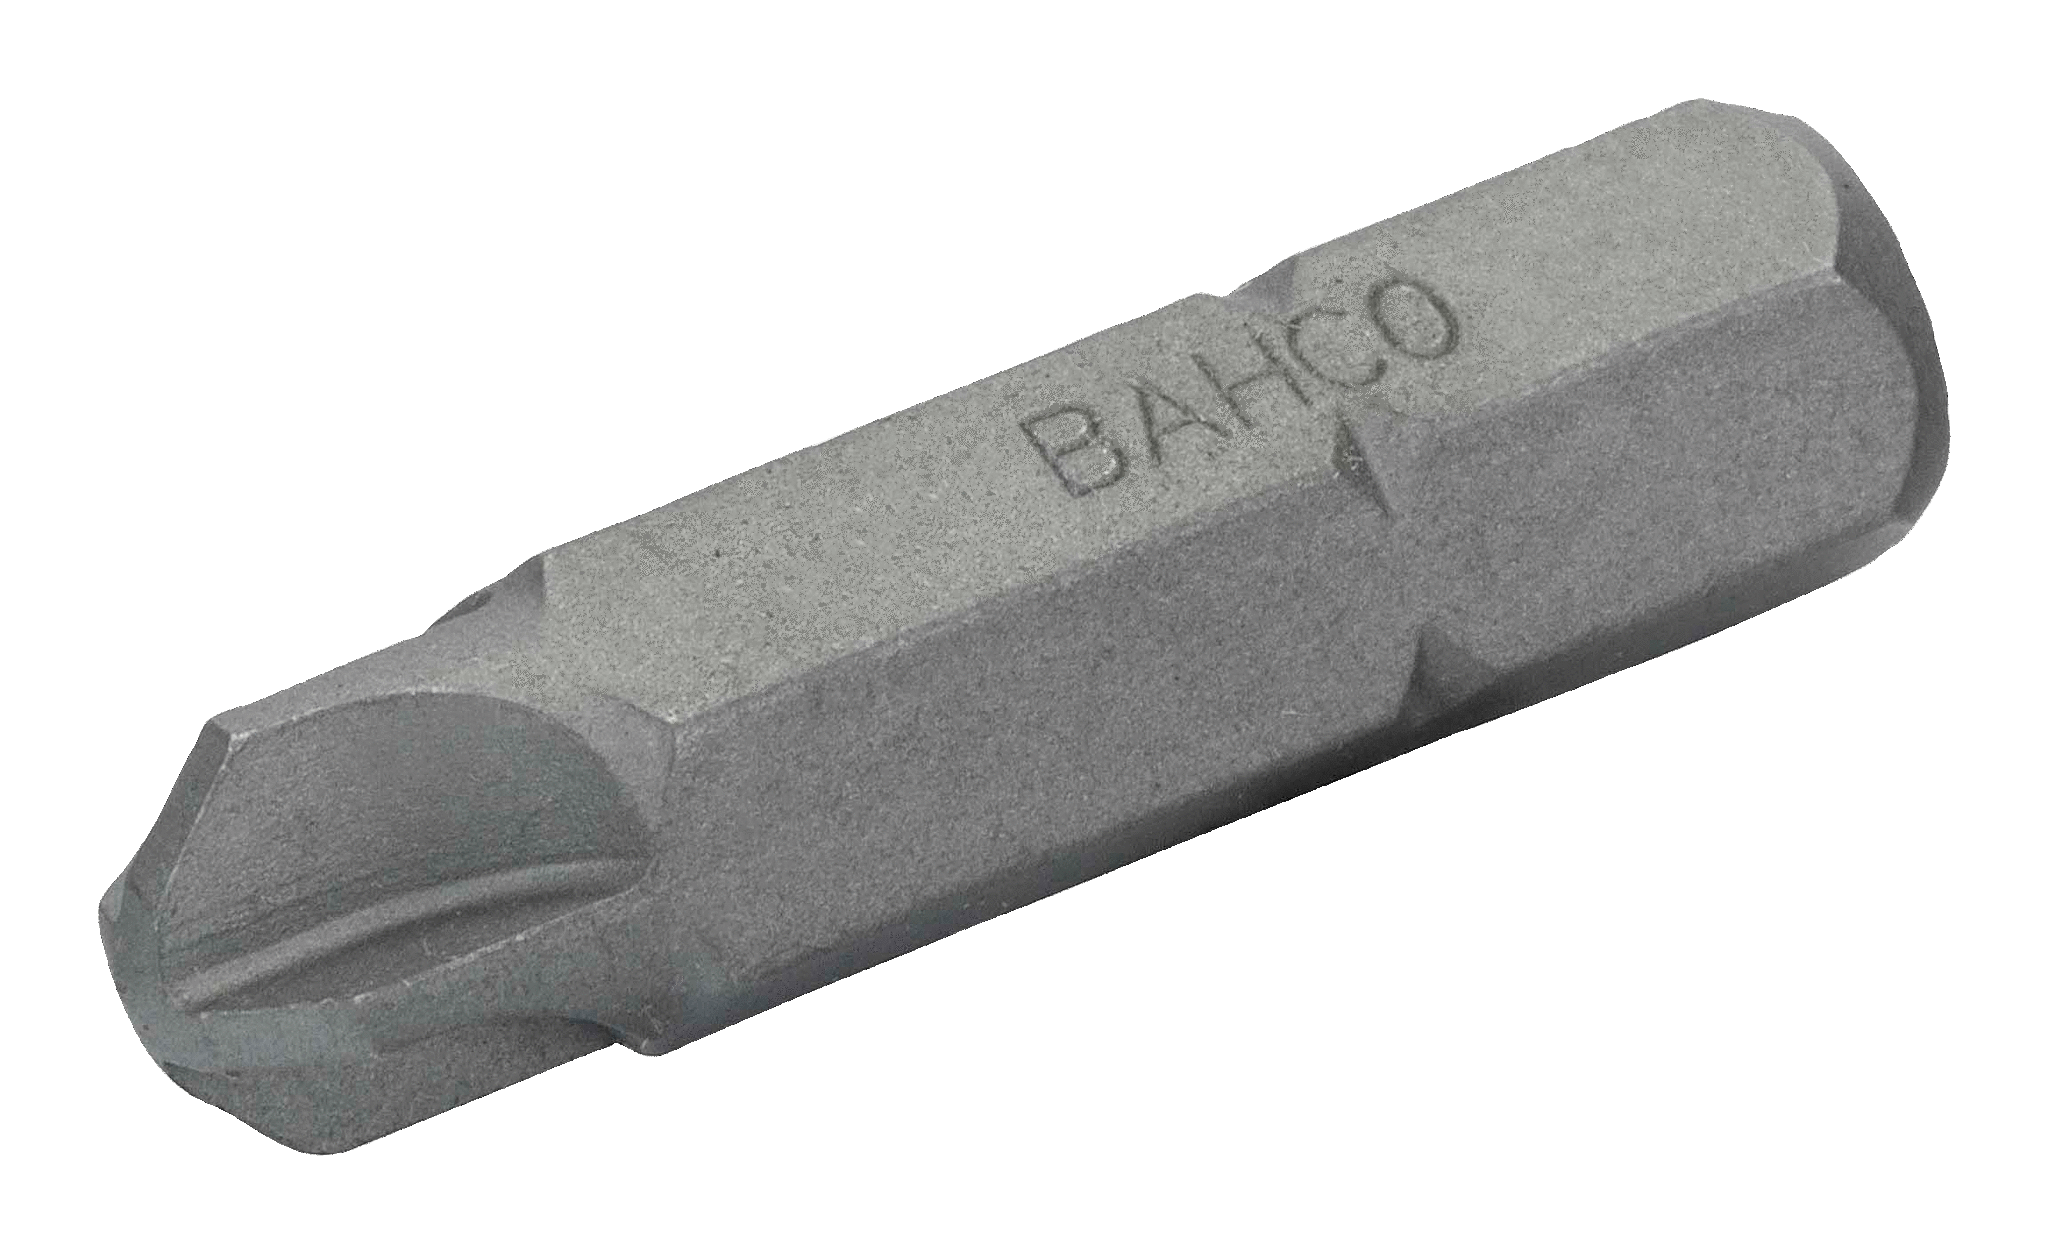 Стандартные биты для отверток размером 5/16 дюйма Torq-Set®, метрические и дюймовые размеры, 32 мм BAHCO 70S/TS